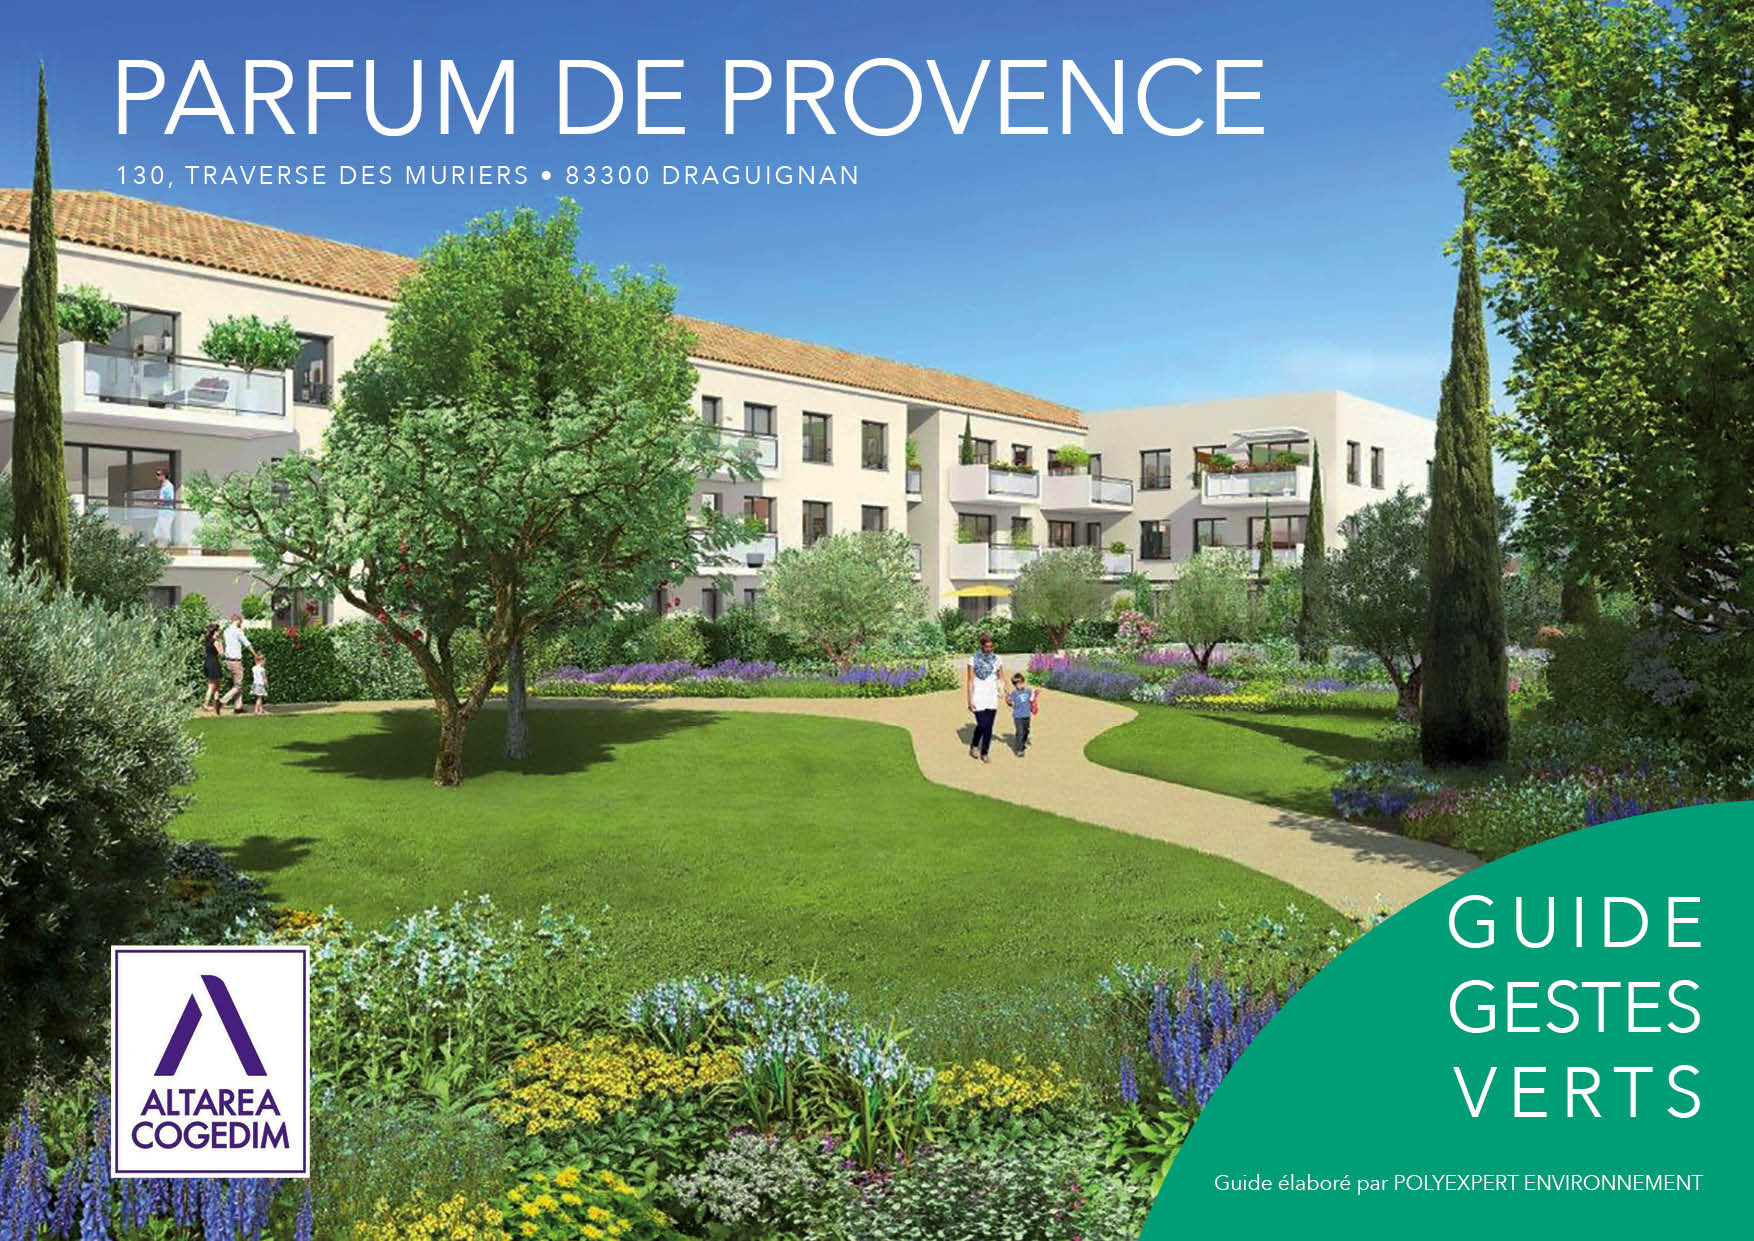 Guide Gestes Verts Parfum de Provence